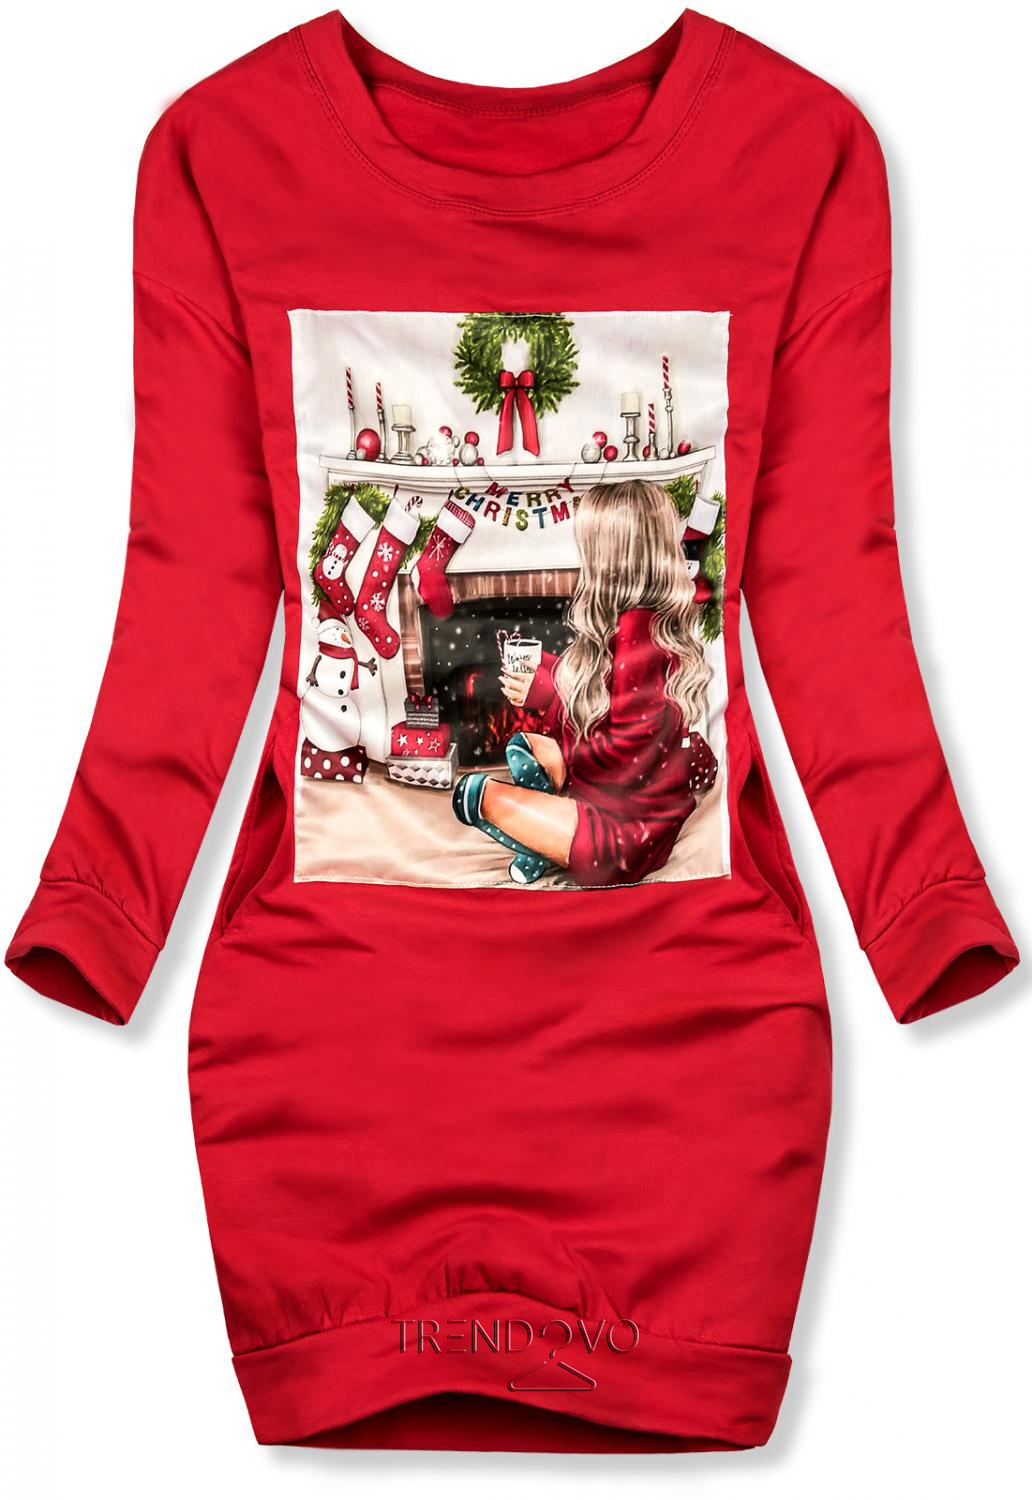 Červené teplákové šaty s vánočním motivem